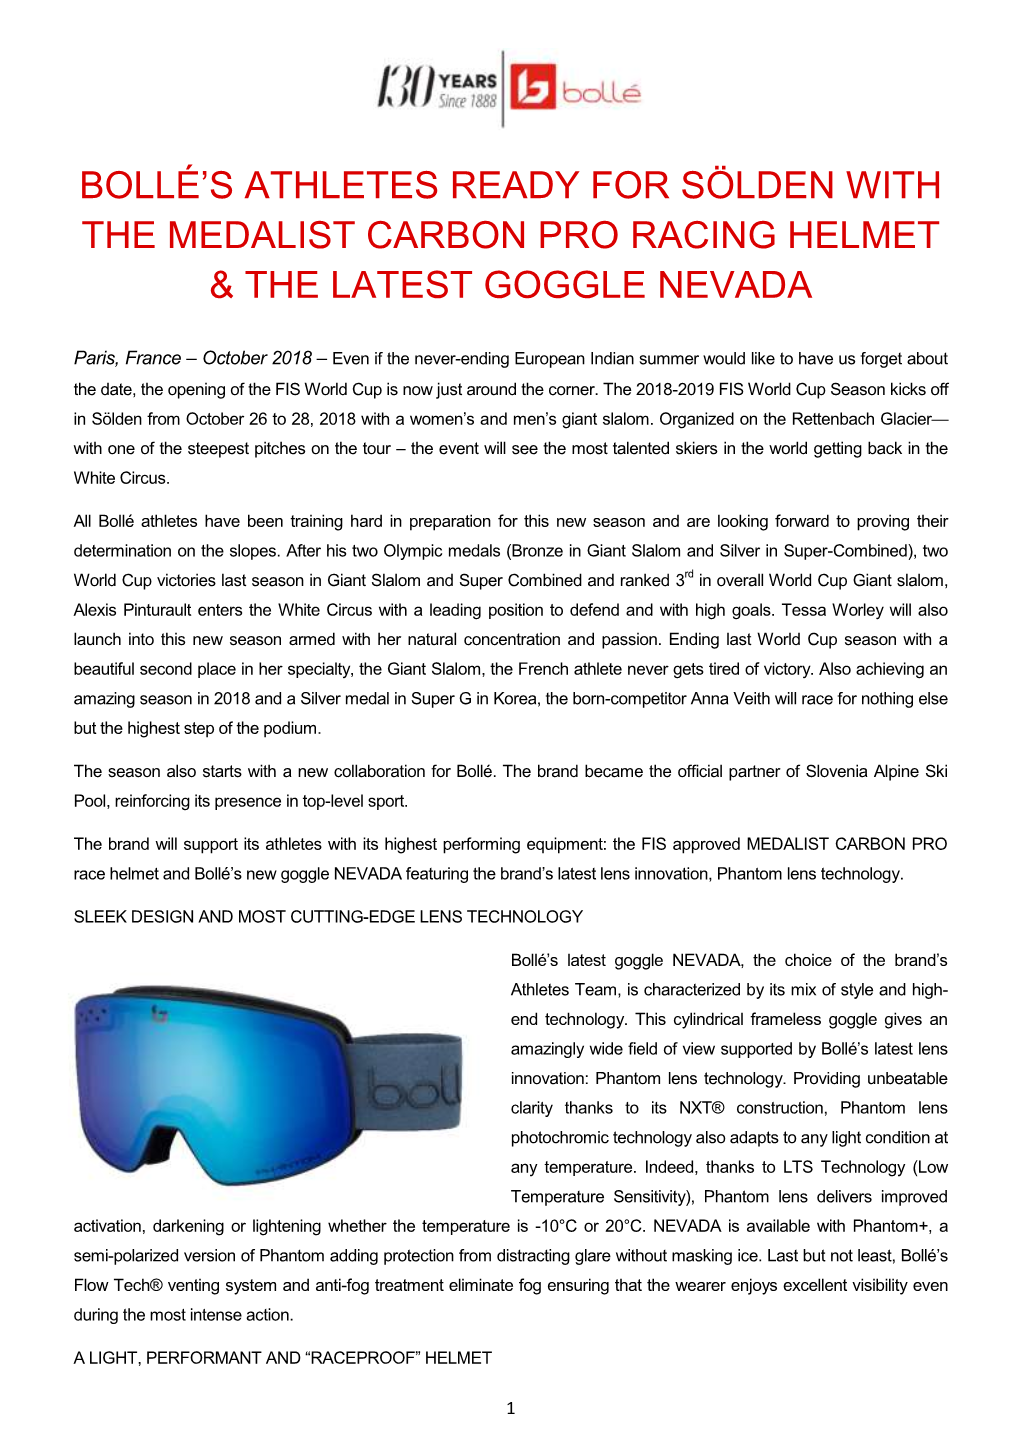 Bollé's Athletes Ready for Sölden with the Medalist Carbon Pro Racing Helmet & the Latest Goggle Nevada